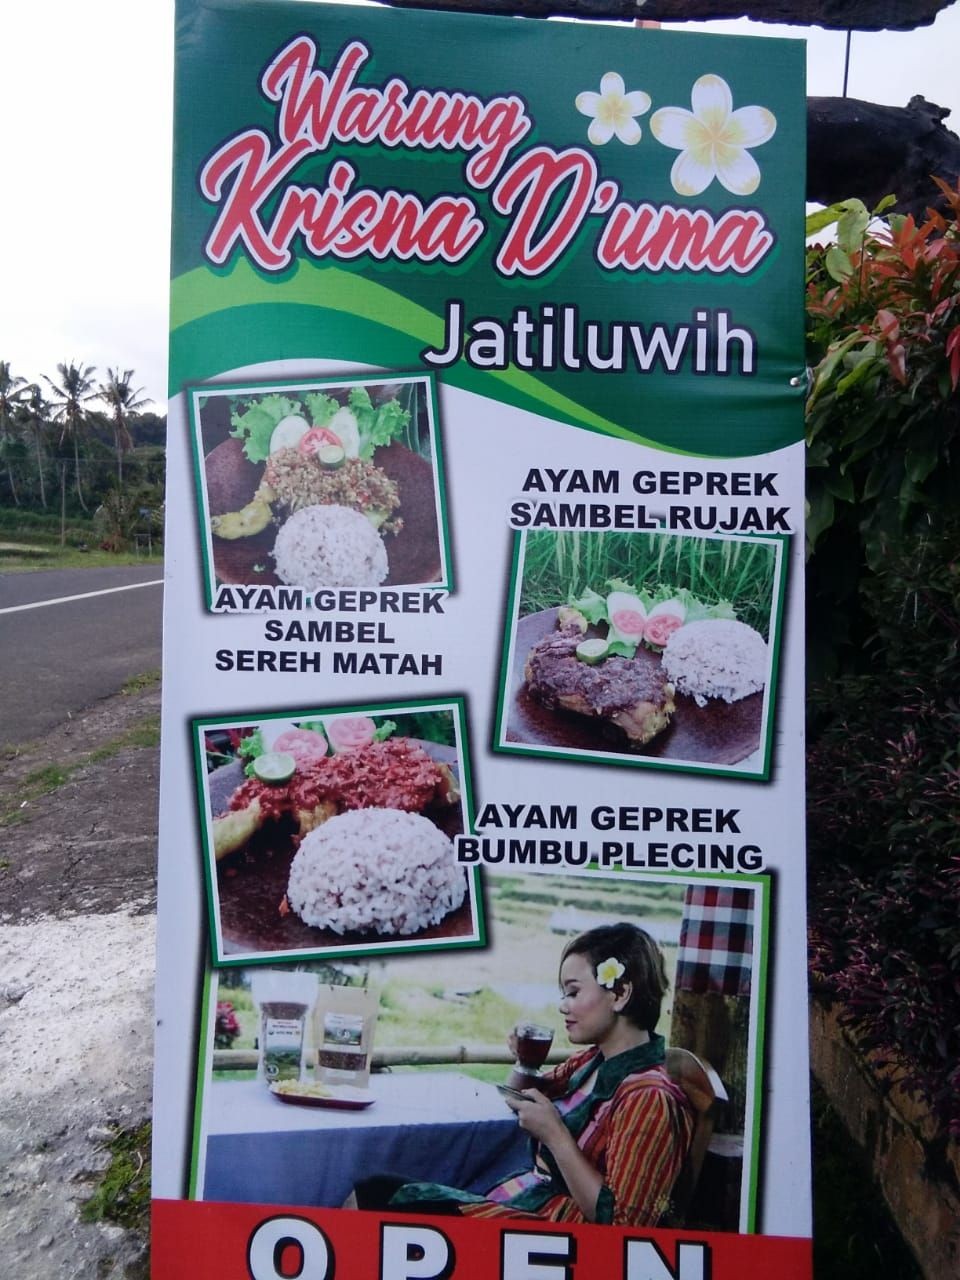 Petani Jatiluwih Bali Jual Sayur Pakai Sistem Petik Sendiri di Kebun